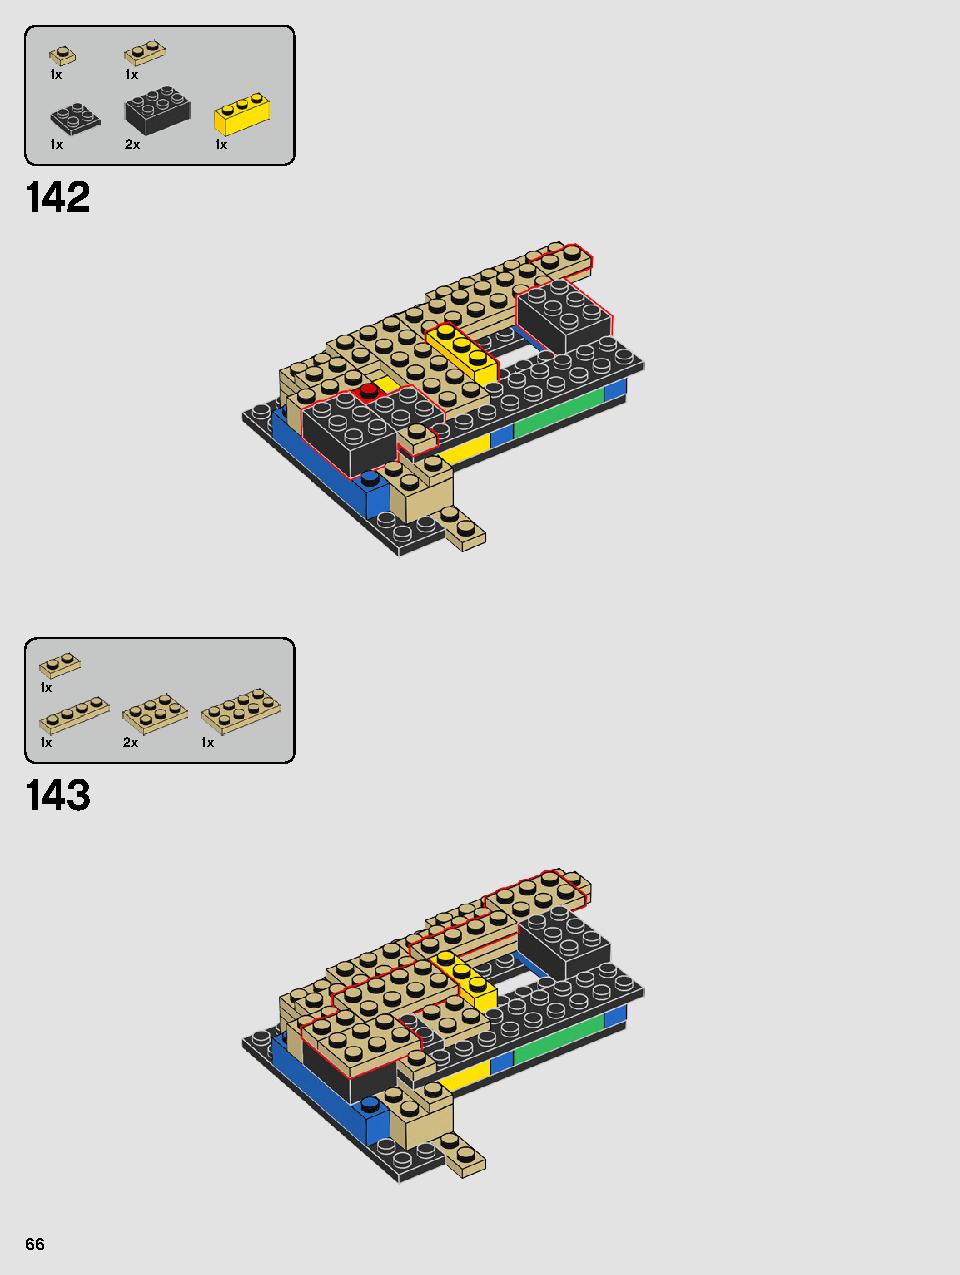 ヨーダ™ 75255 レゴの商品情報 レゴの説明書・組立方法 66 page